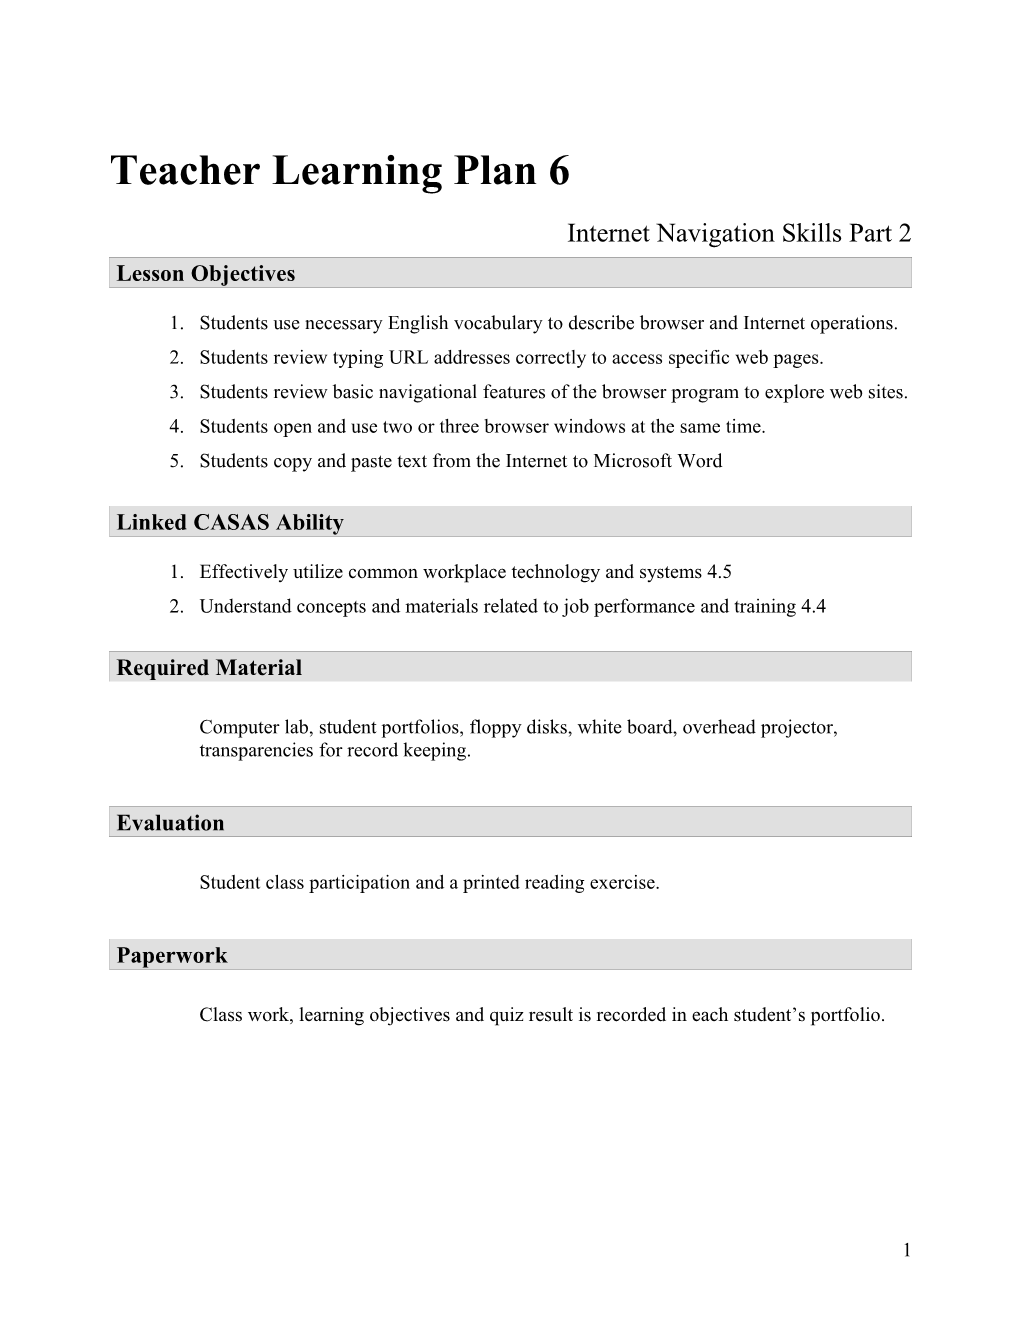 Teacher Learning Plan 5